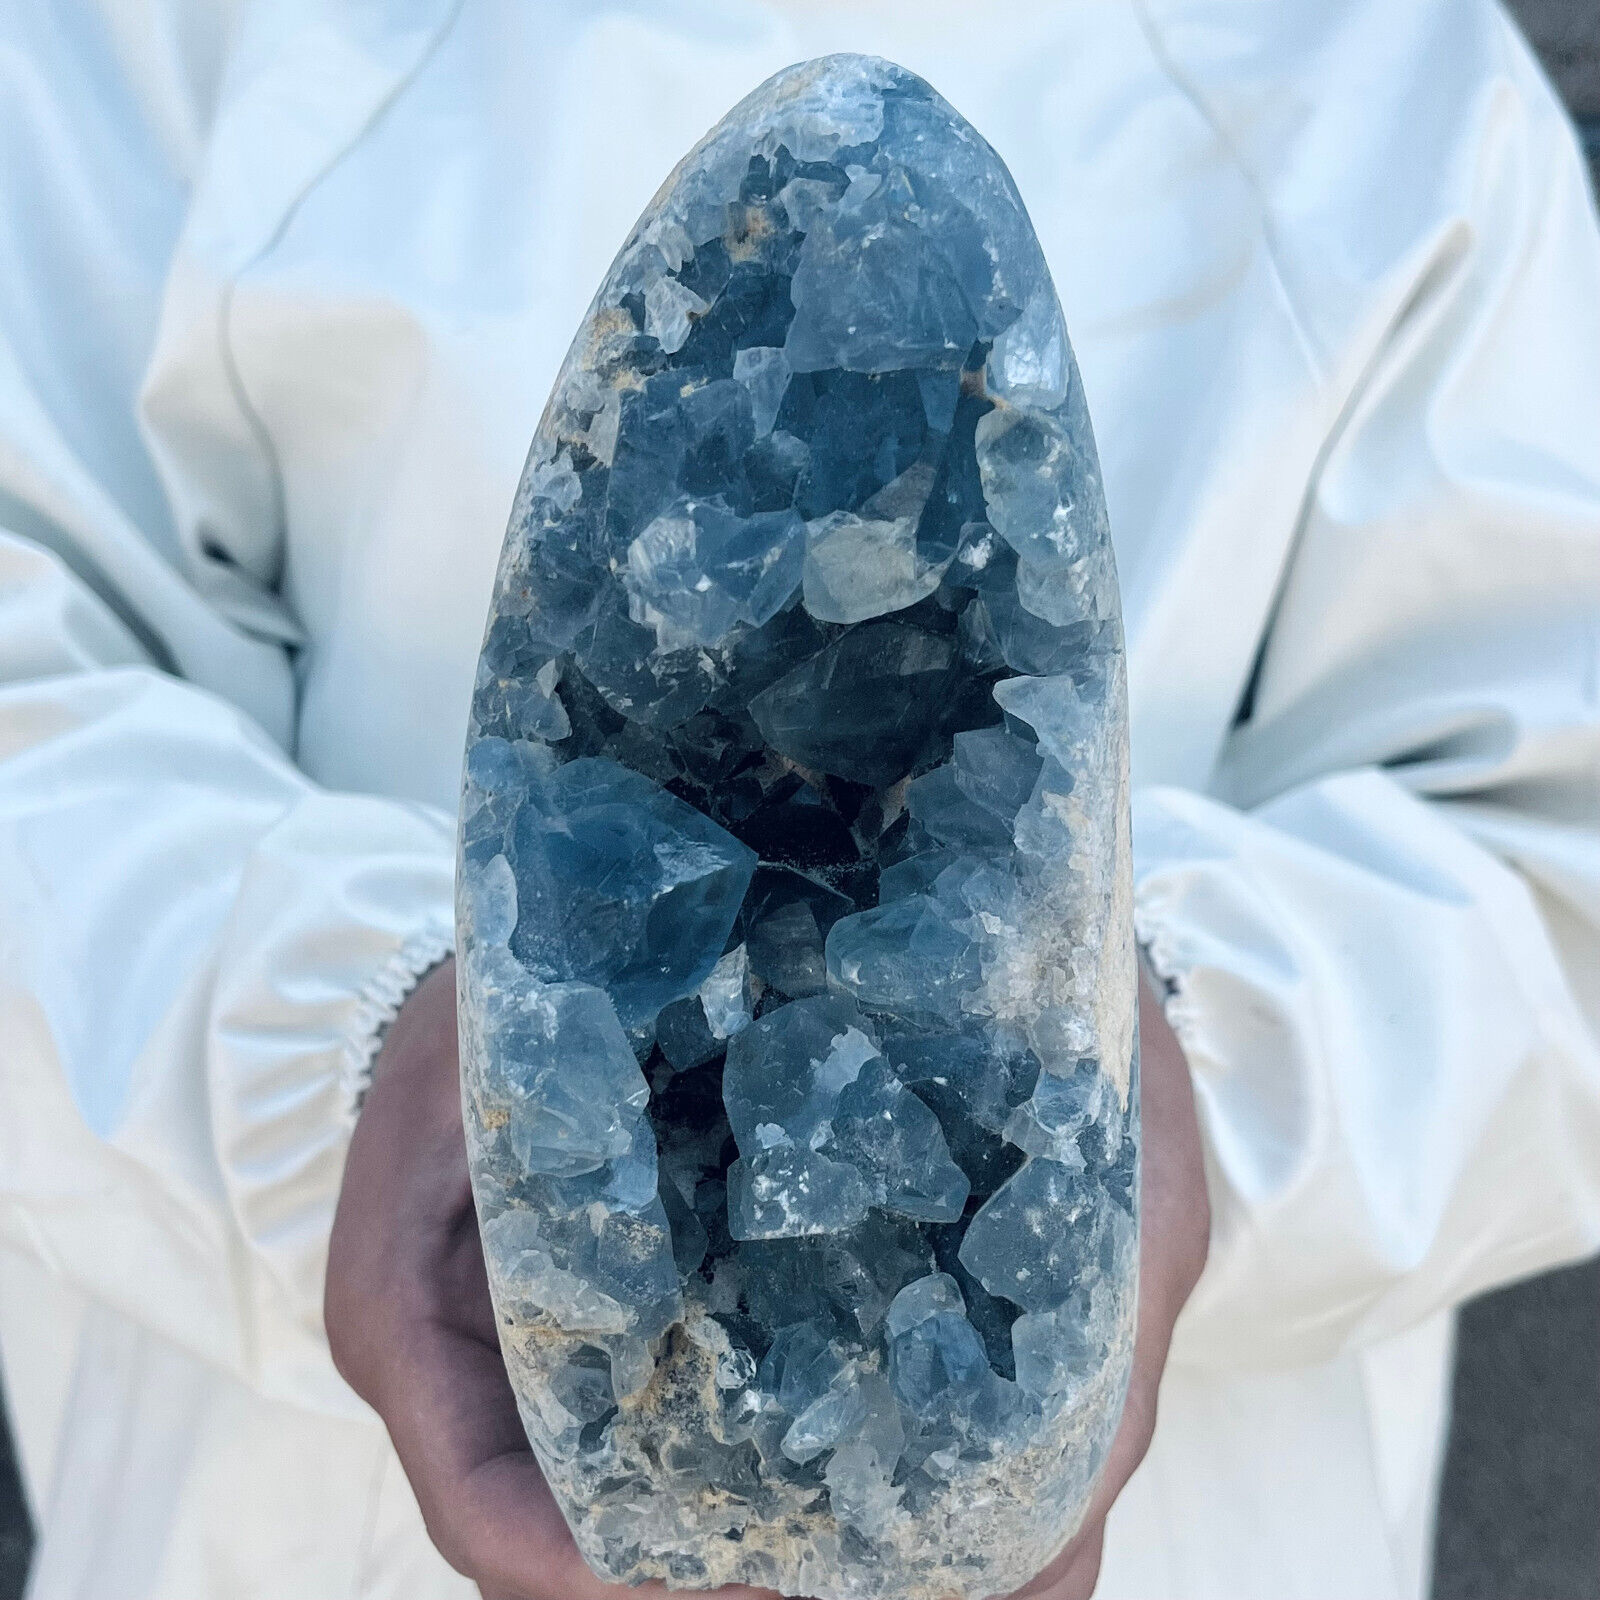 4.6LB Large Natural Blue Celestite Crystal Geode Quartz Cluster Mineral Specime